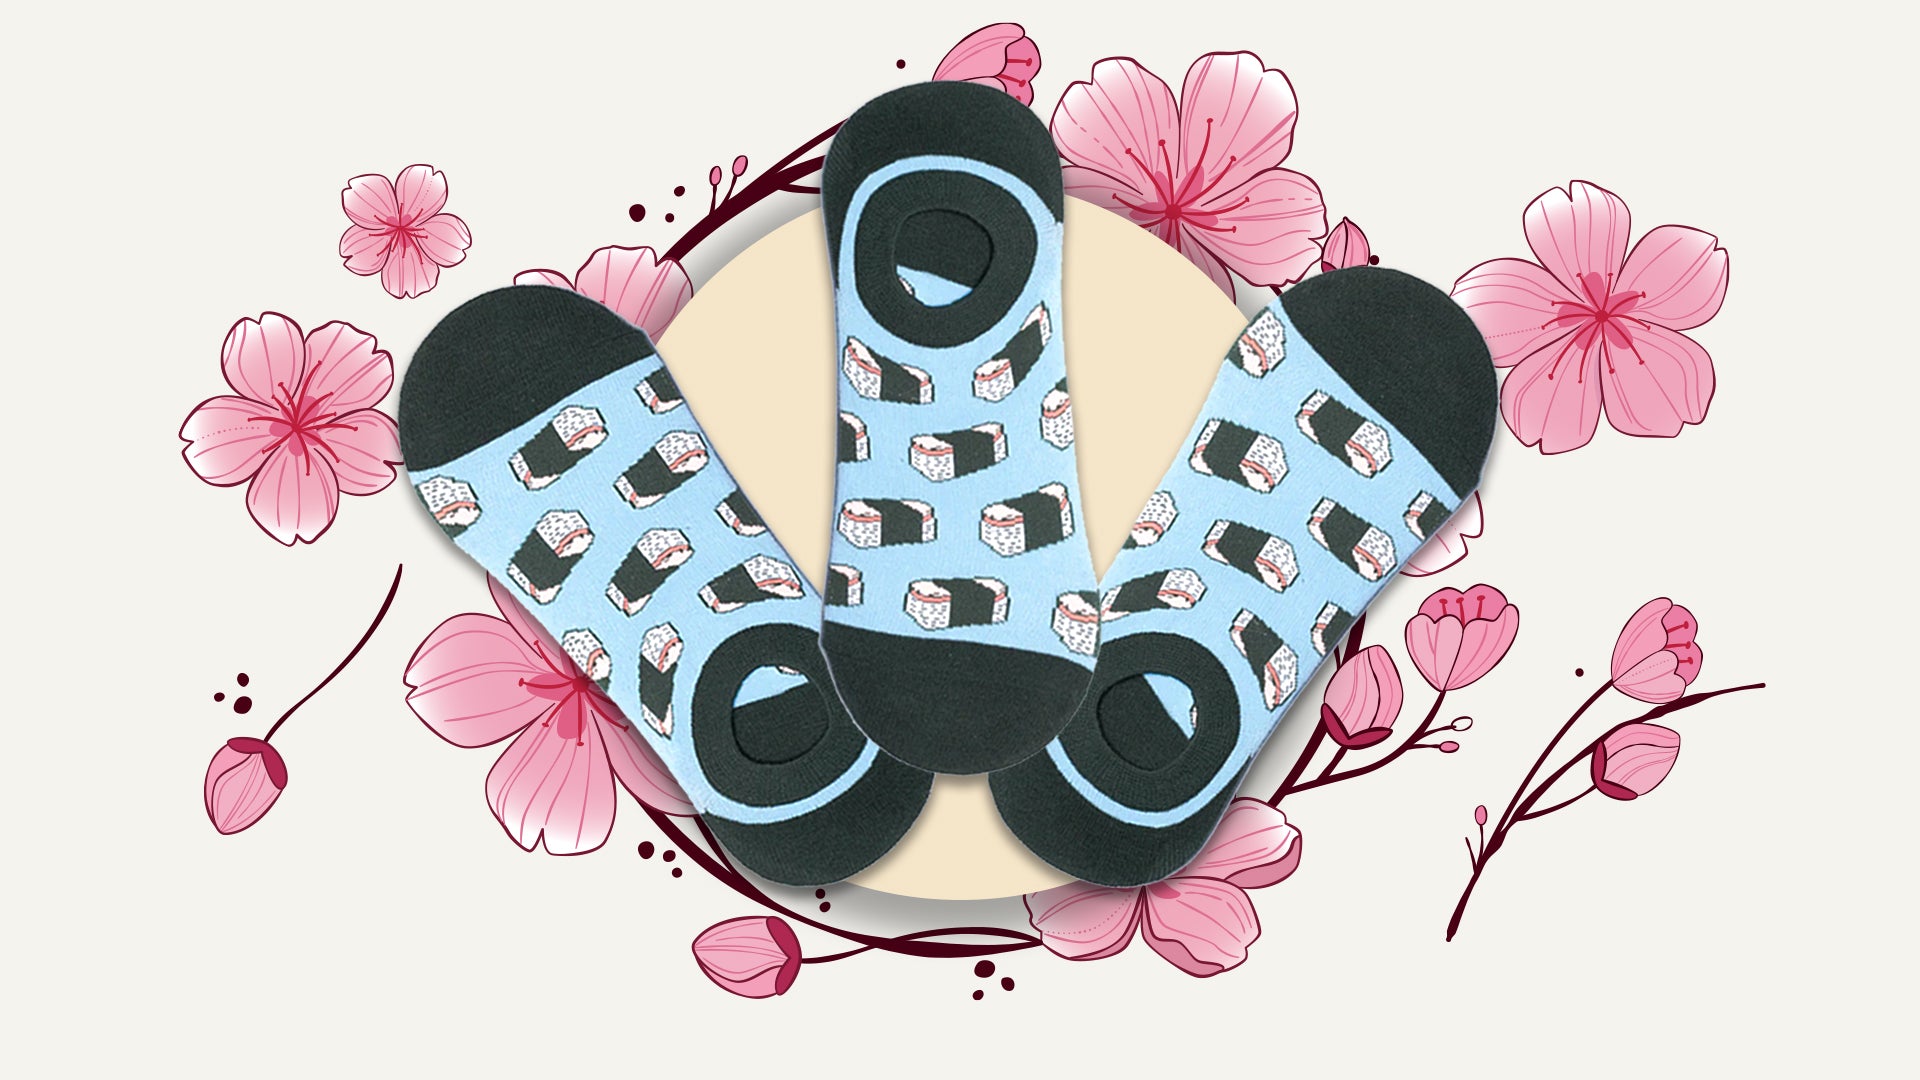 Men's Spam Musubi No Show socks - Cotton Made Socks - Light Blue Ankle Socks